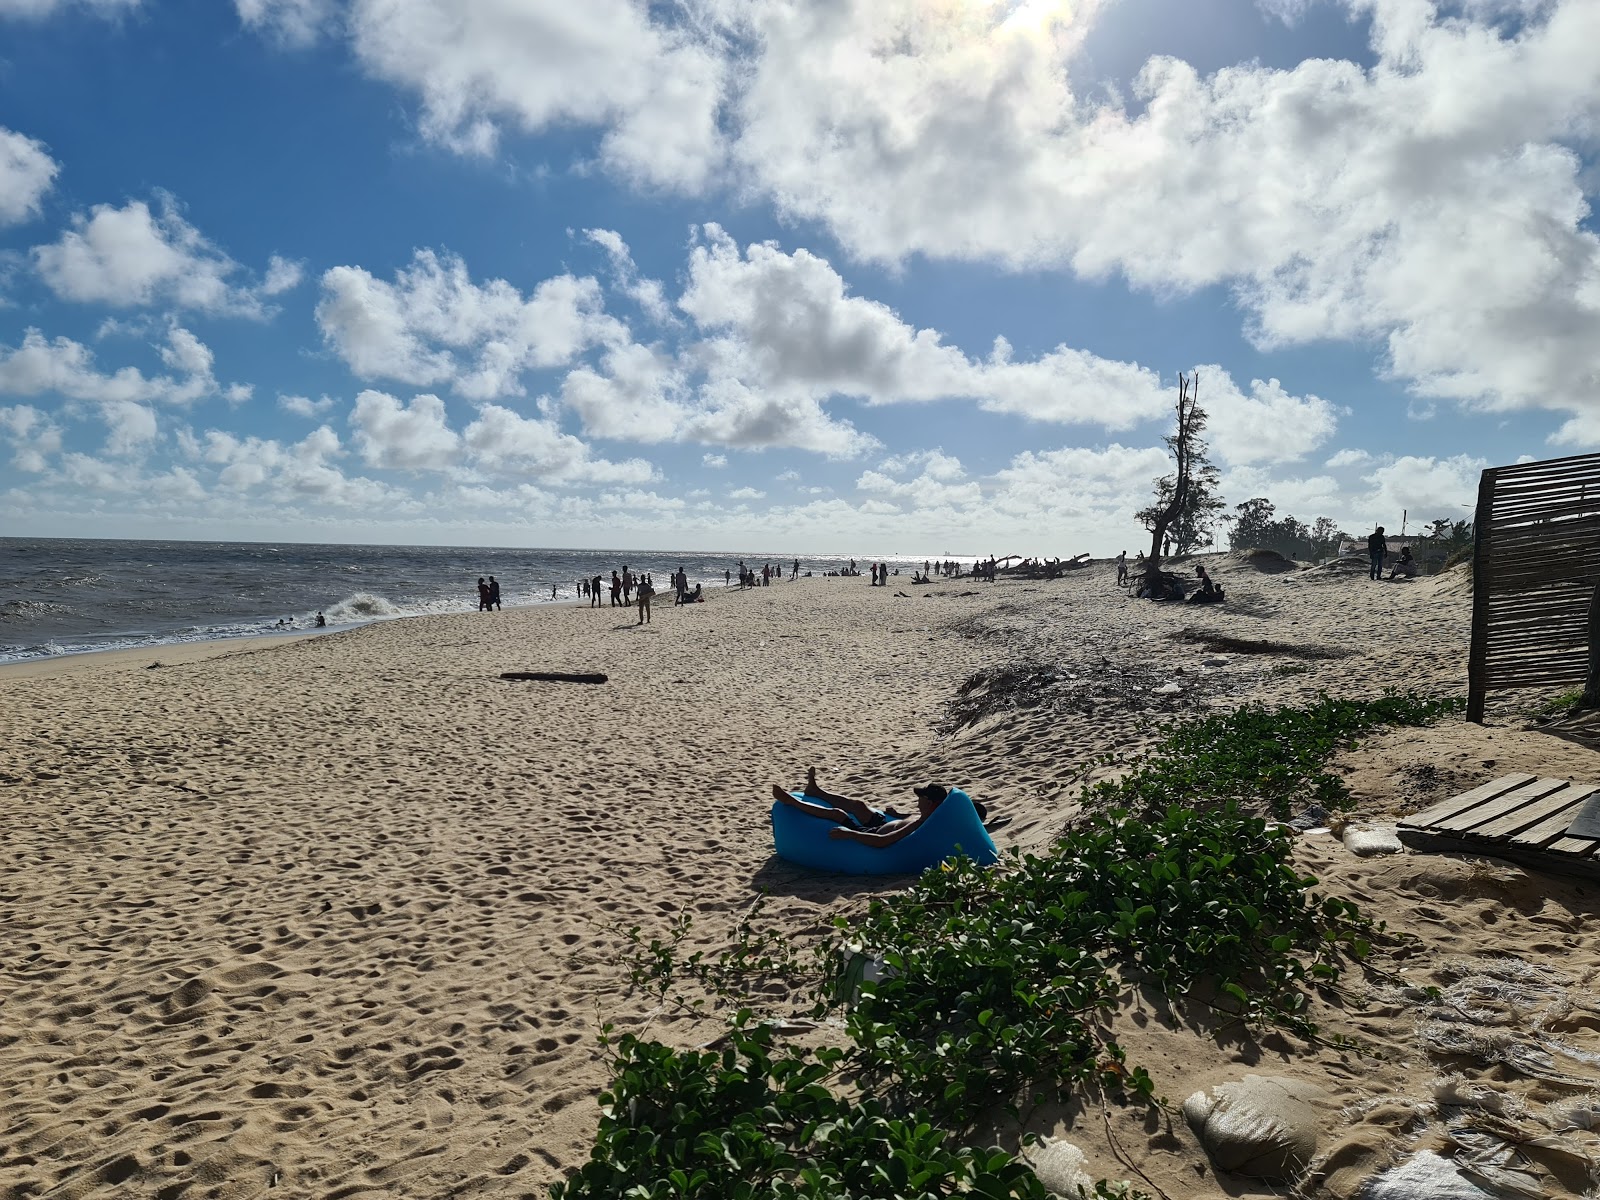 Beira Beach'in fotoğrafı çok temiz temizlik seviyesi ile